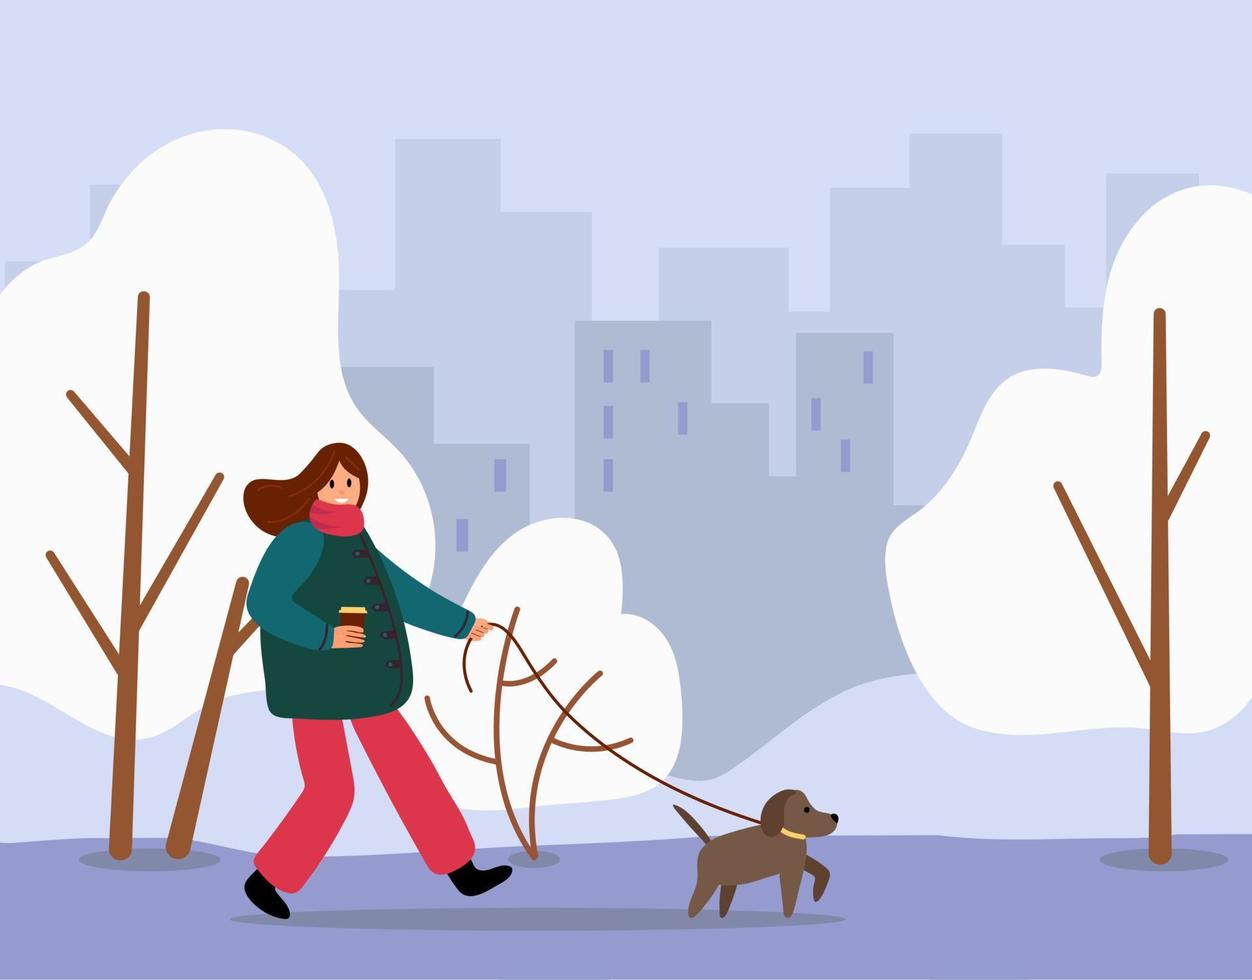 promenad din hund månad. de flicka är gående henne hund. platt stil. vektor illustration.